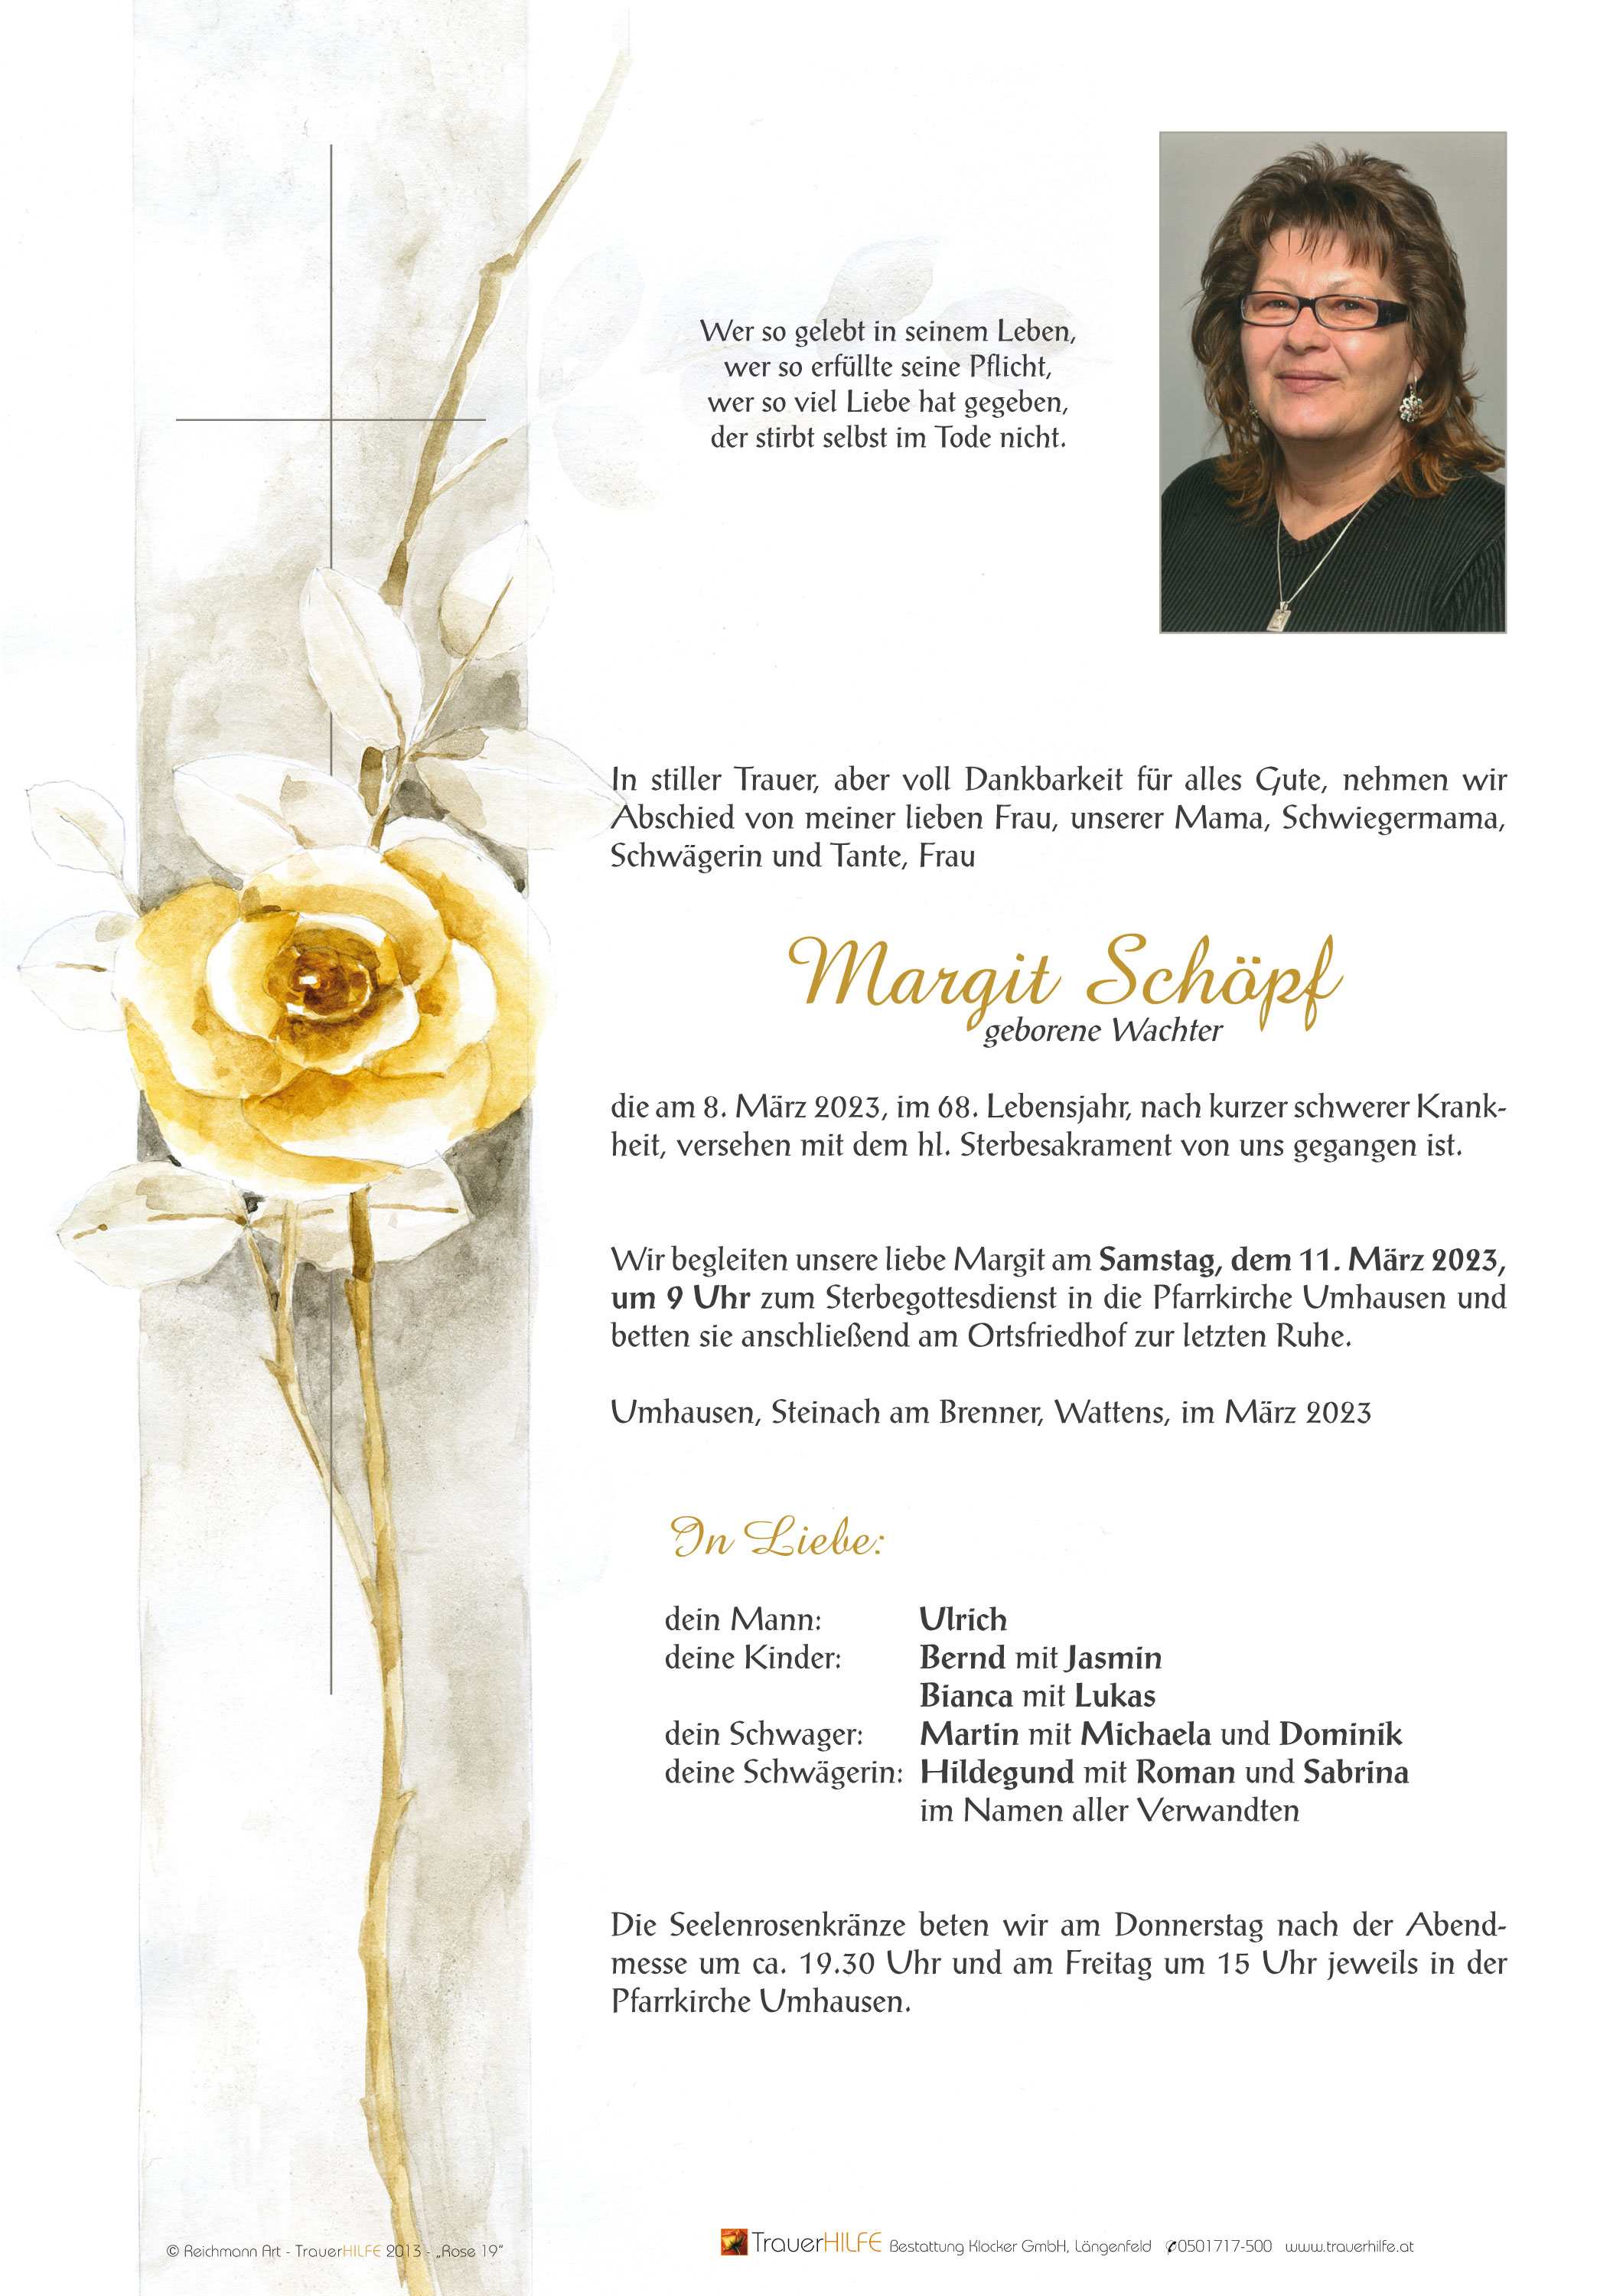 Margit Schöpf